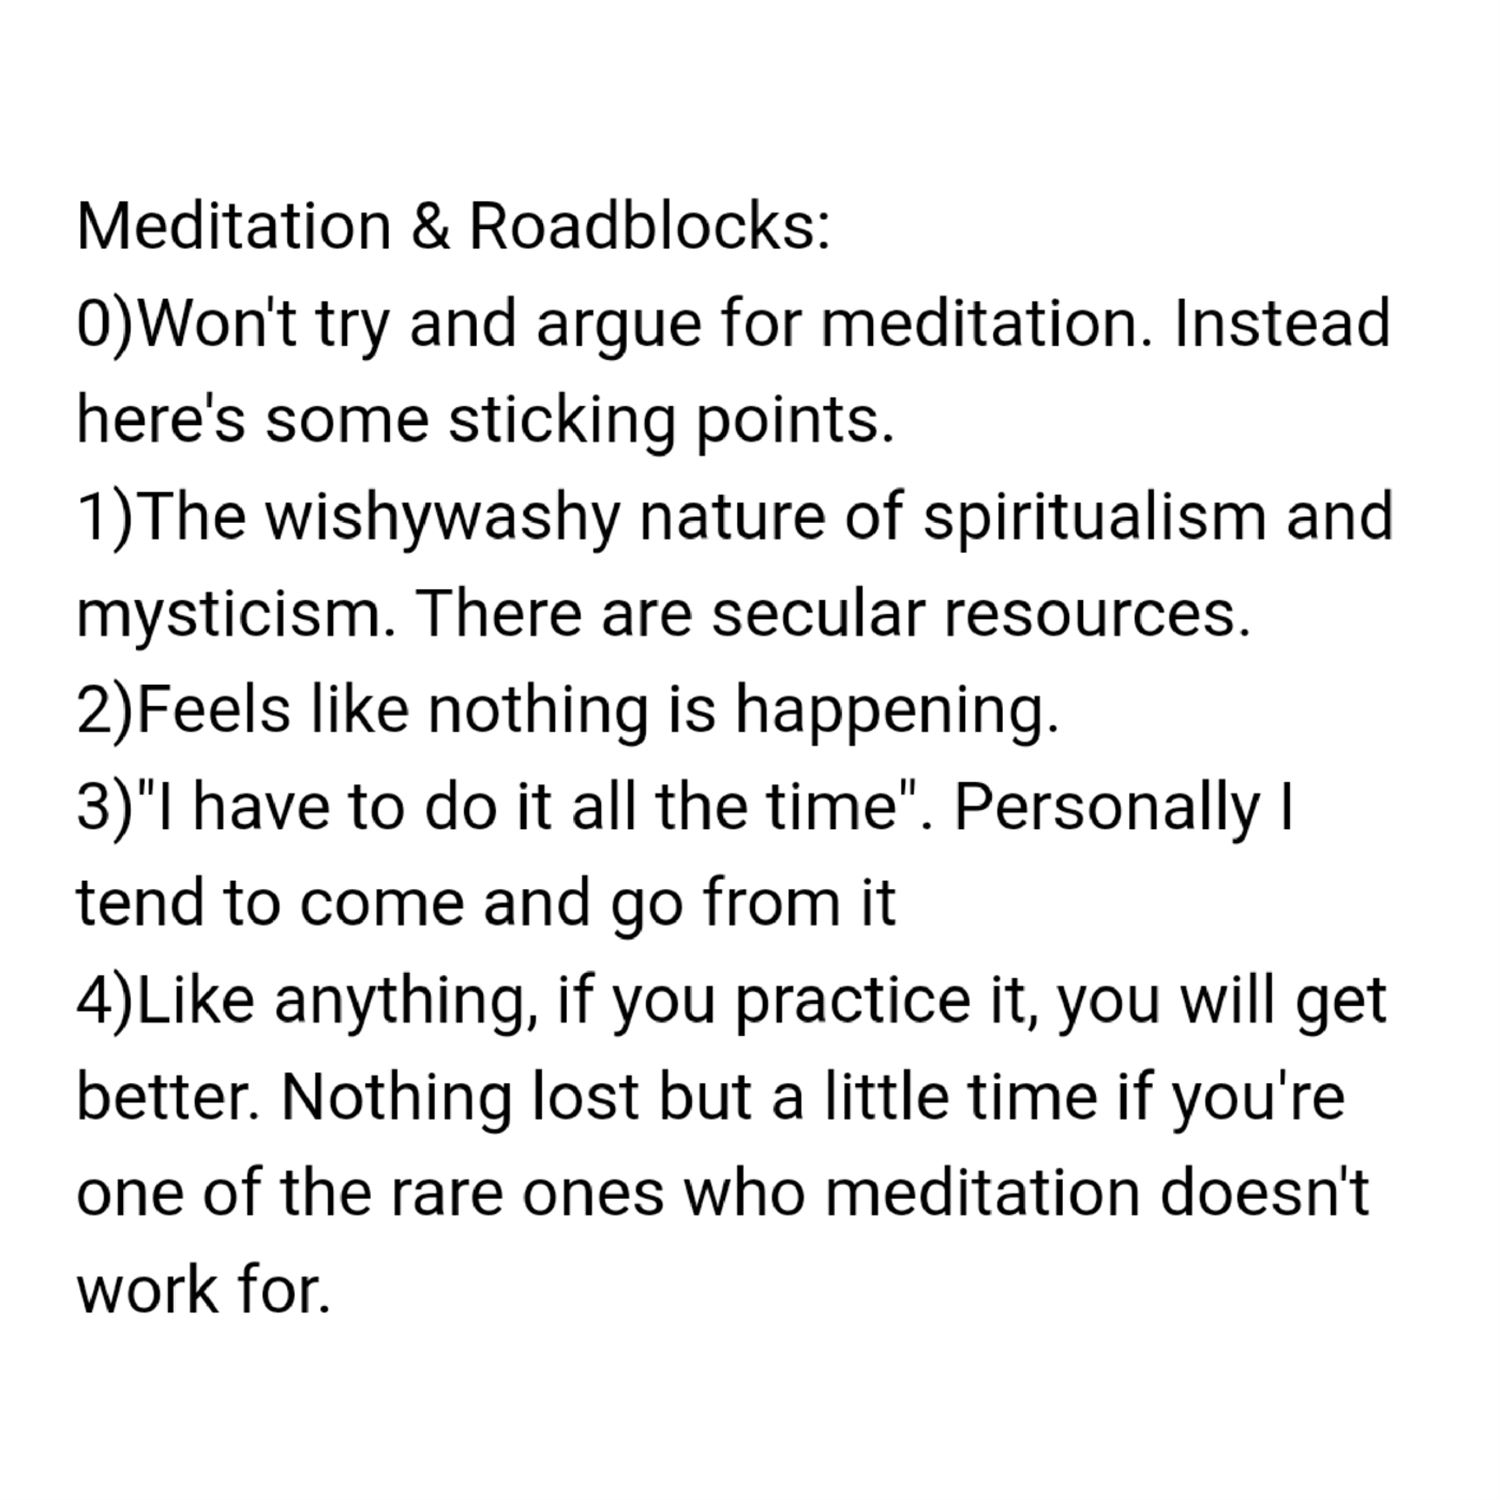 Meditation & roadblocks